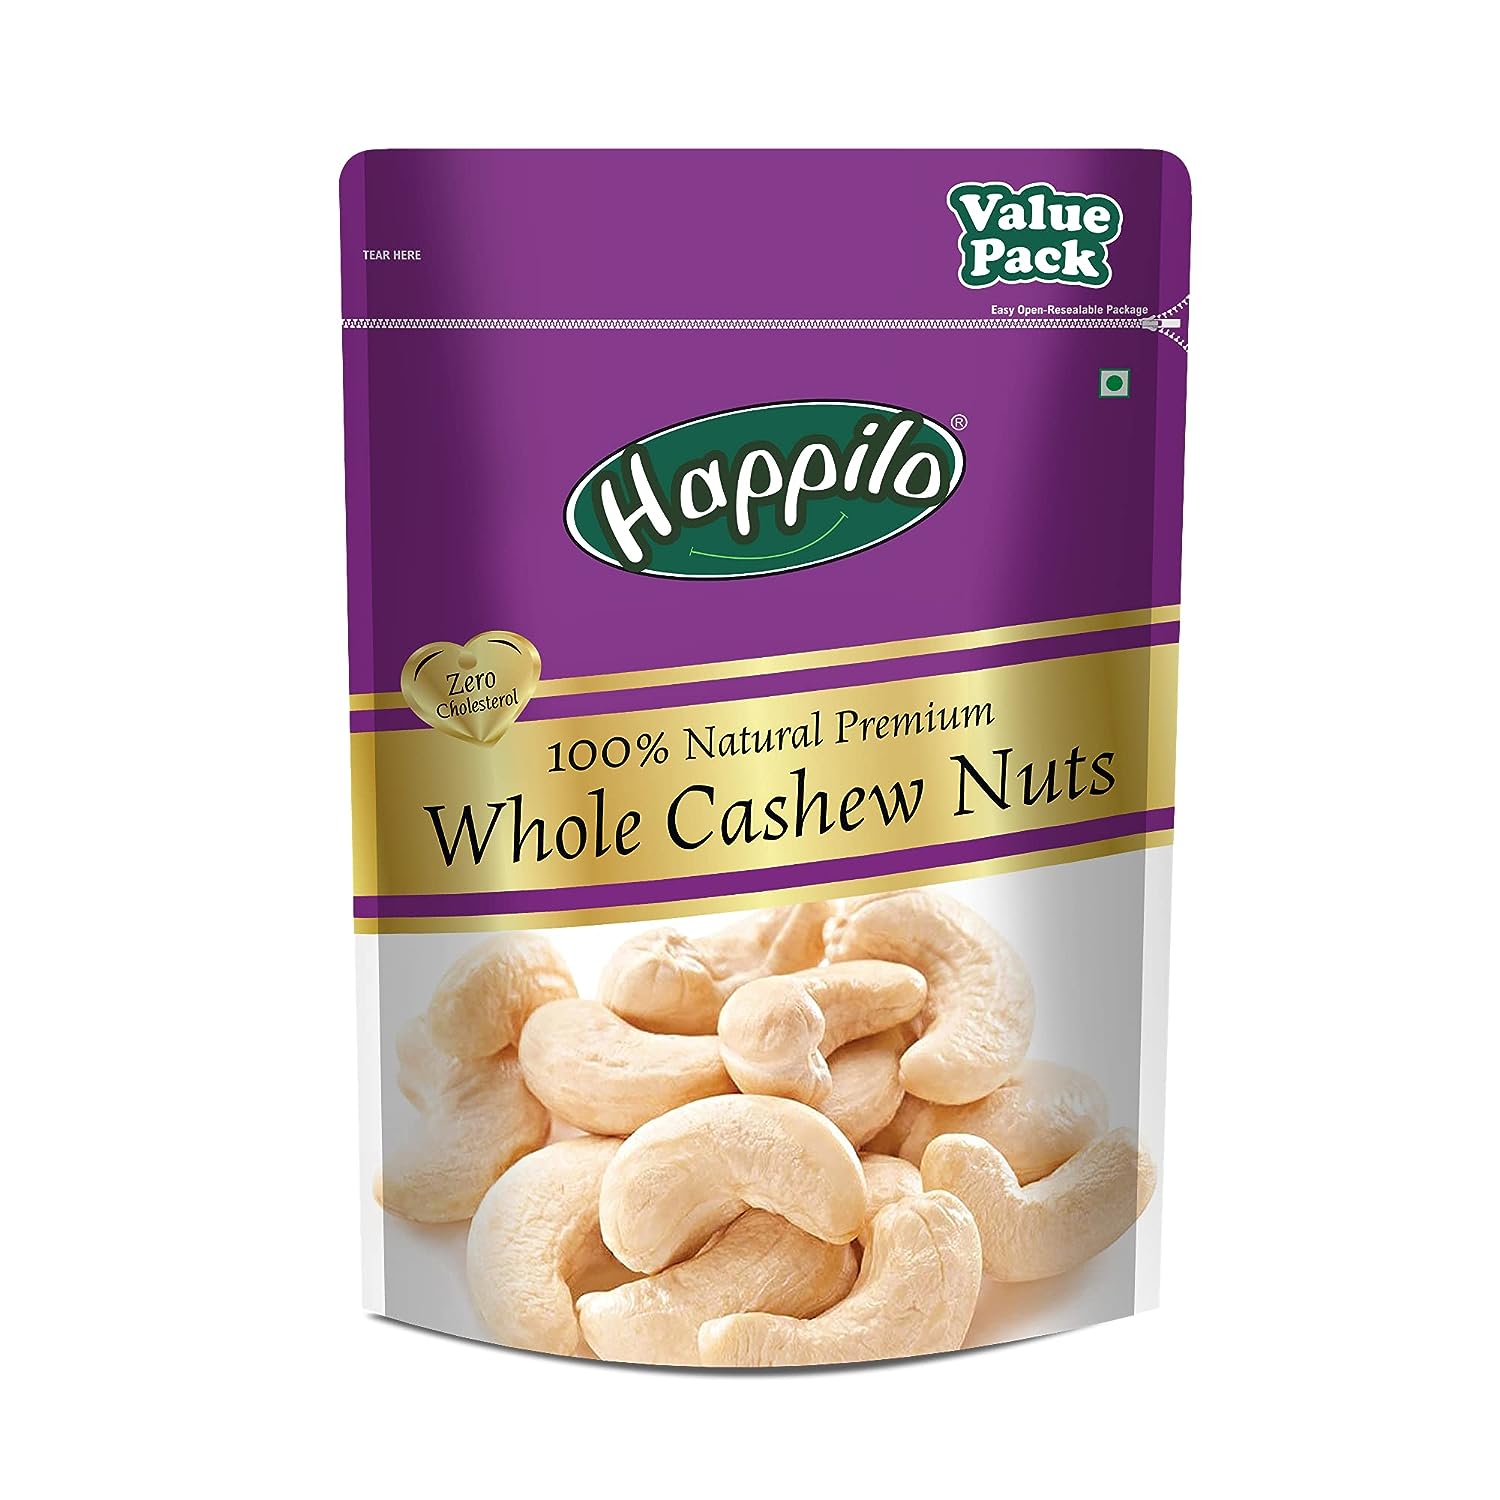  Happilo 100% Natural Premium Whole Cashews 500 g Value Pack